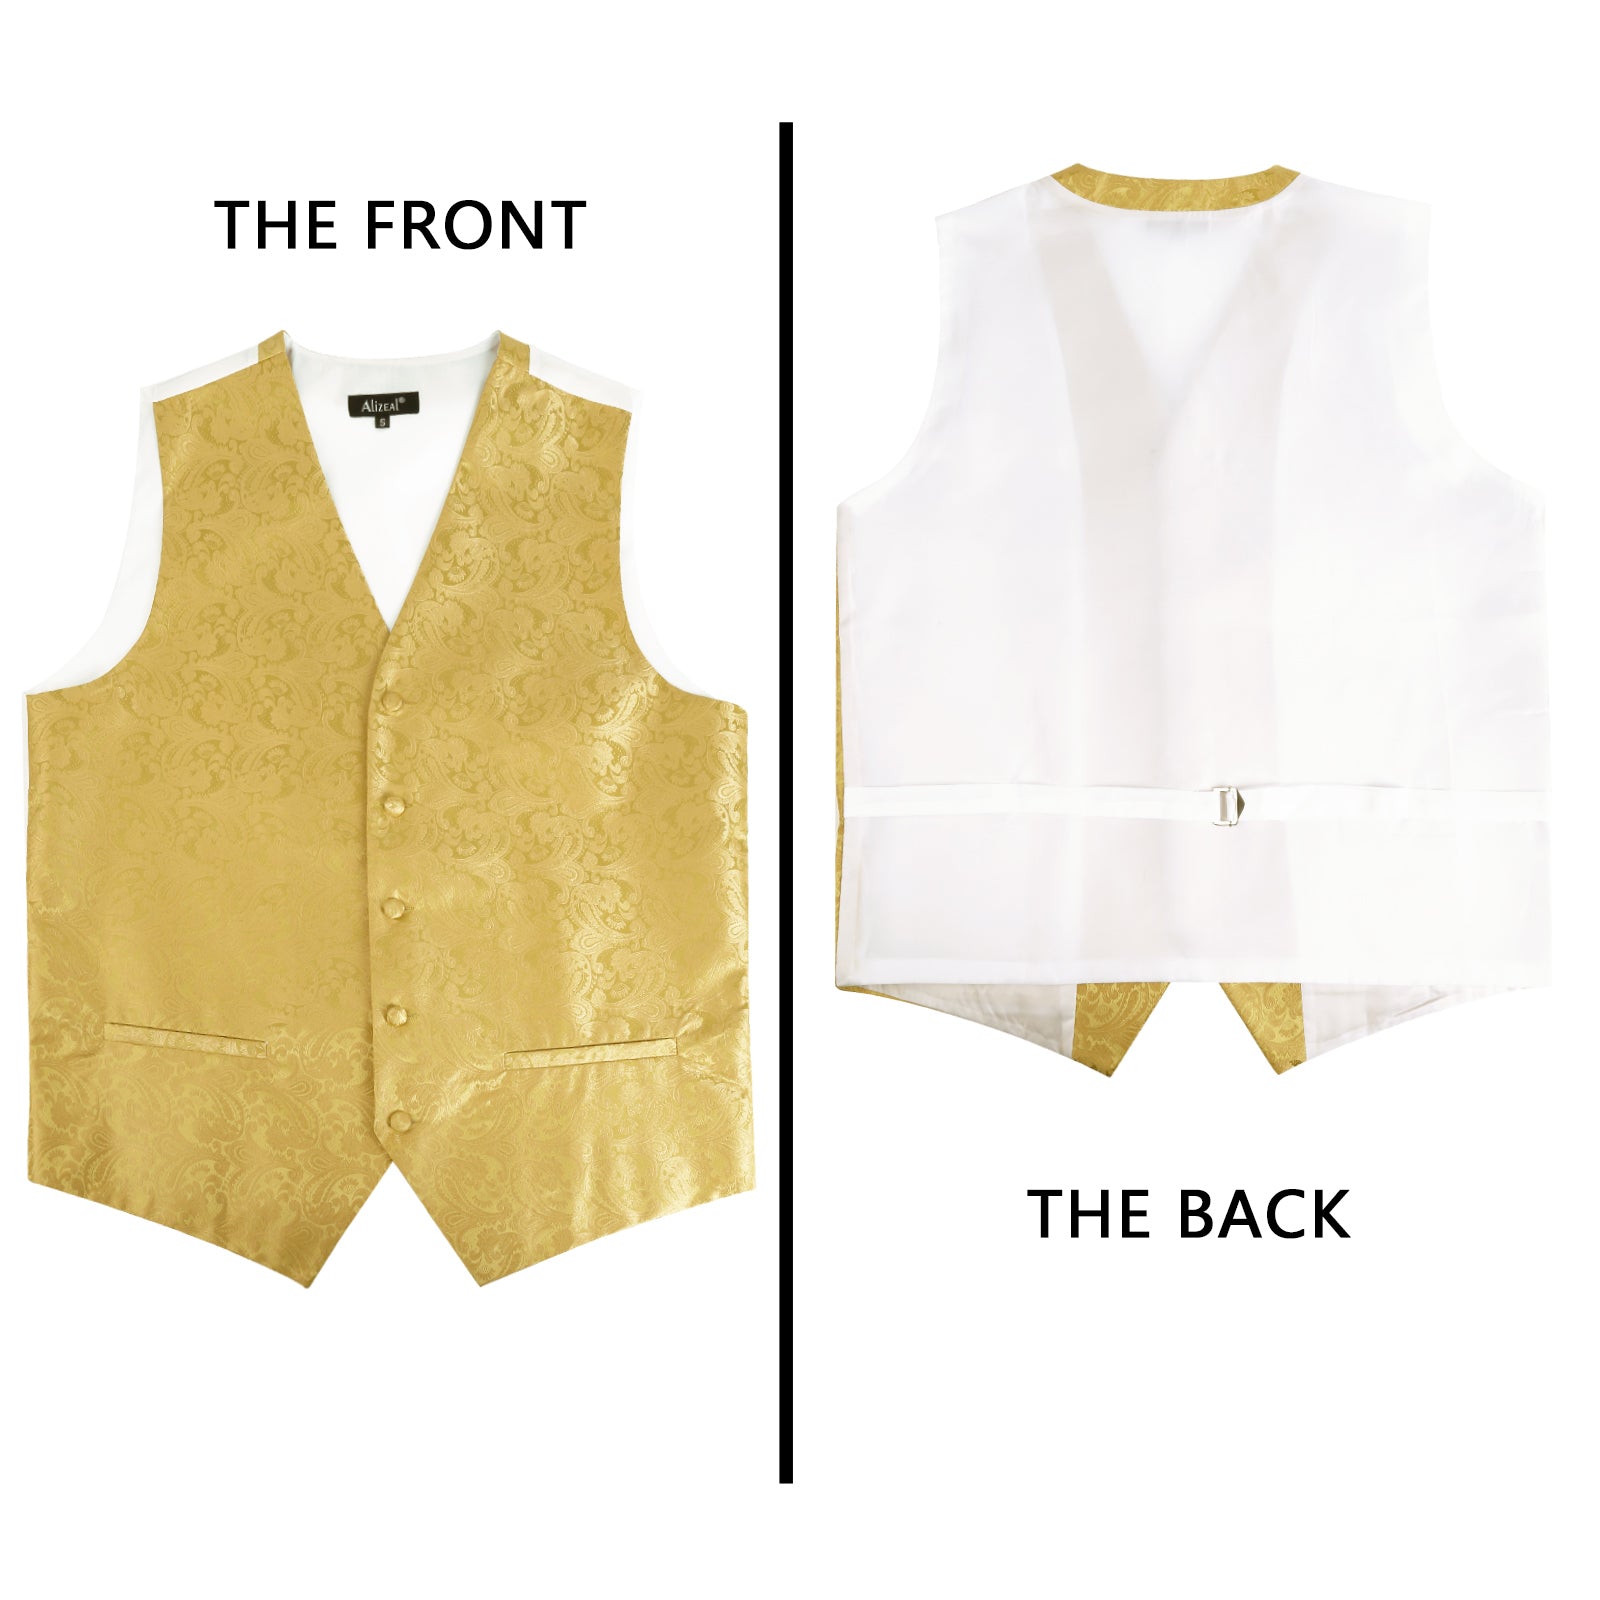 Men's Paisley Suit Vest, Self-tied Bow Tie, 3.35inch(8.5cm) Necktie and Pocket Square Set, 175-Golden Olive